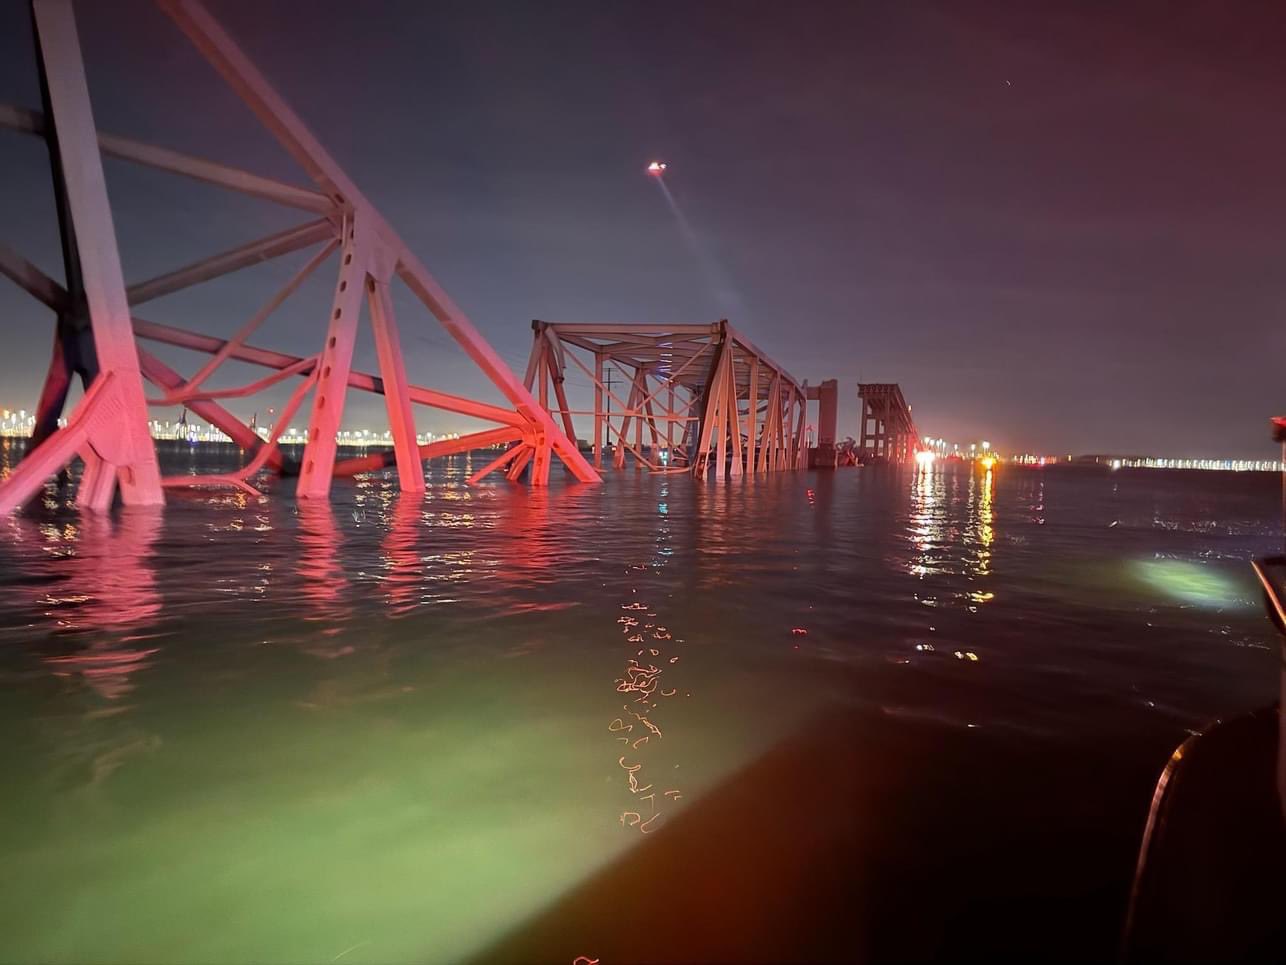 Se derrumbó puente de Baltimore tras choque de barco carguero, al menos siete desaparecidos en el agua